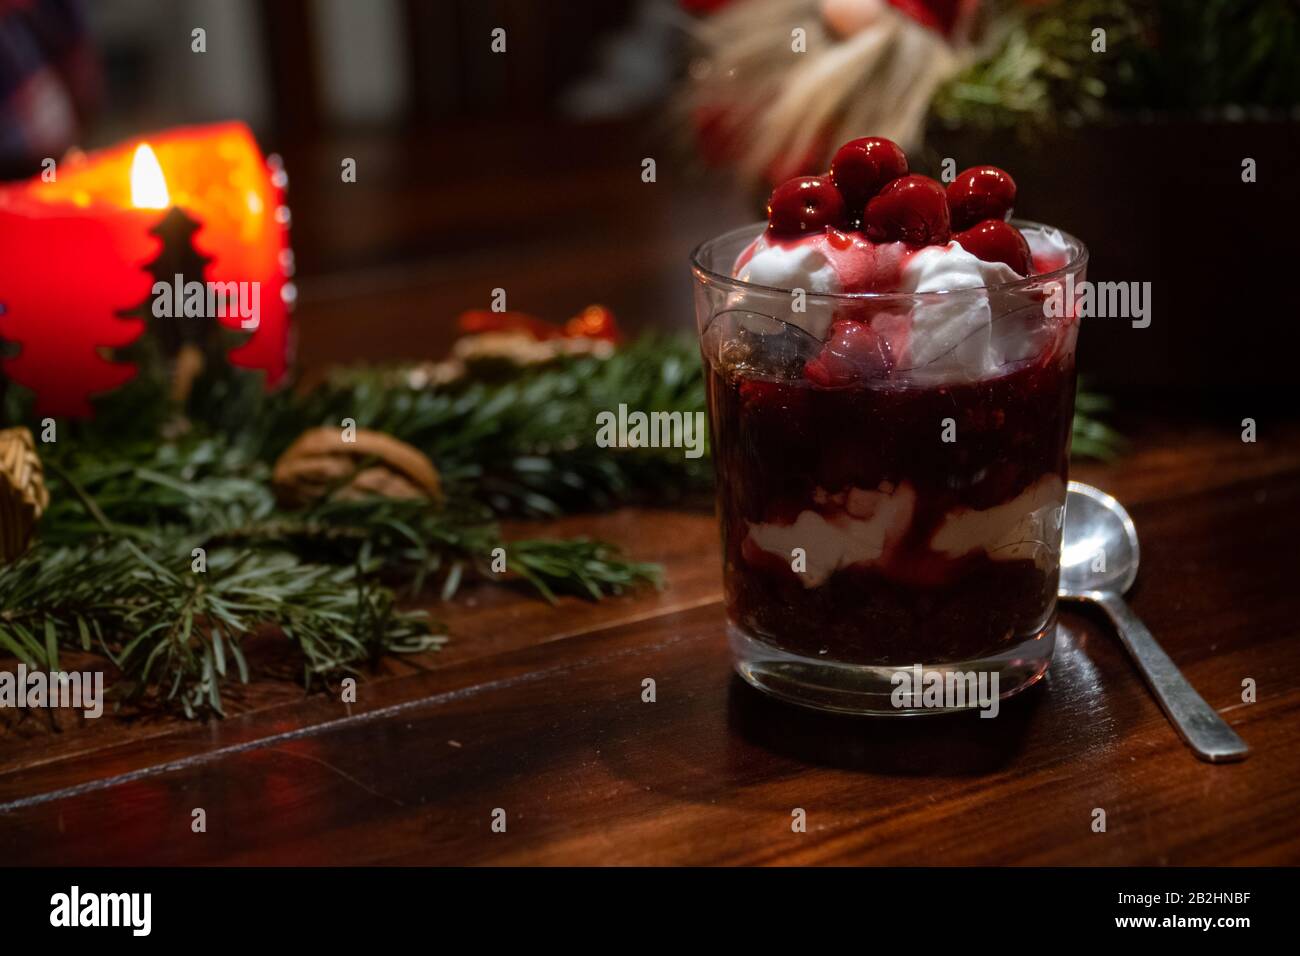 Un dessert végétalien au chocolat, à la crème et aux cerises sur une table décorée de Noël Banque D'Images